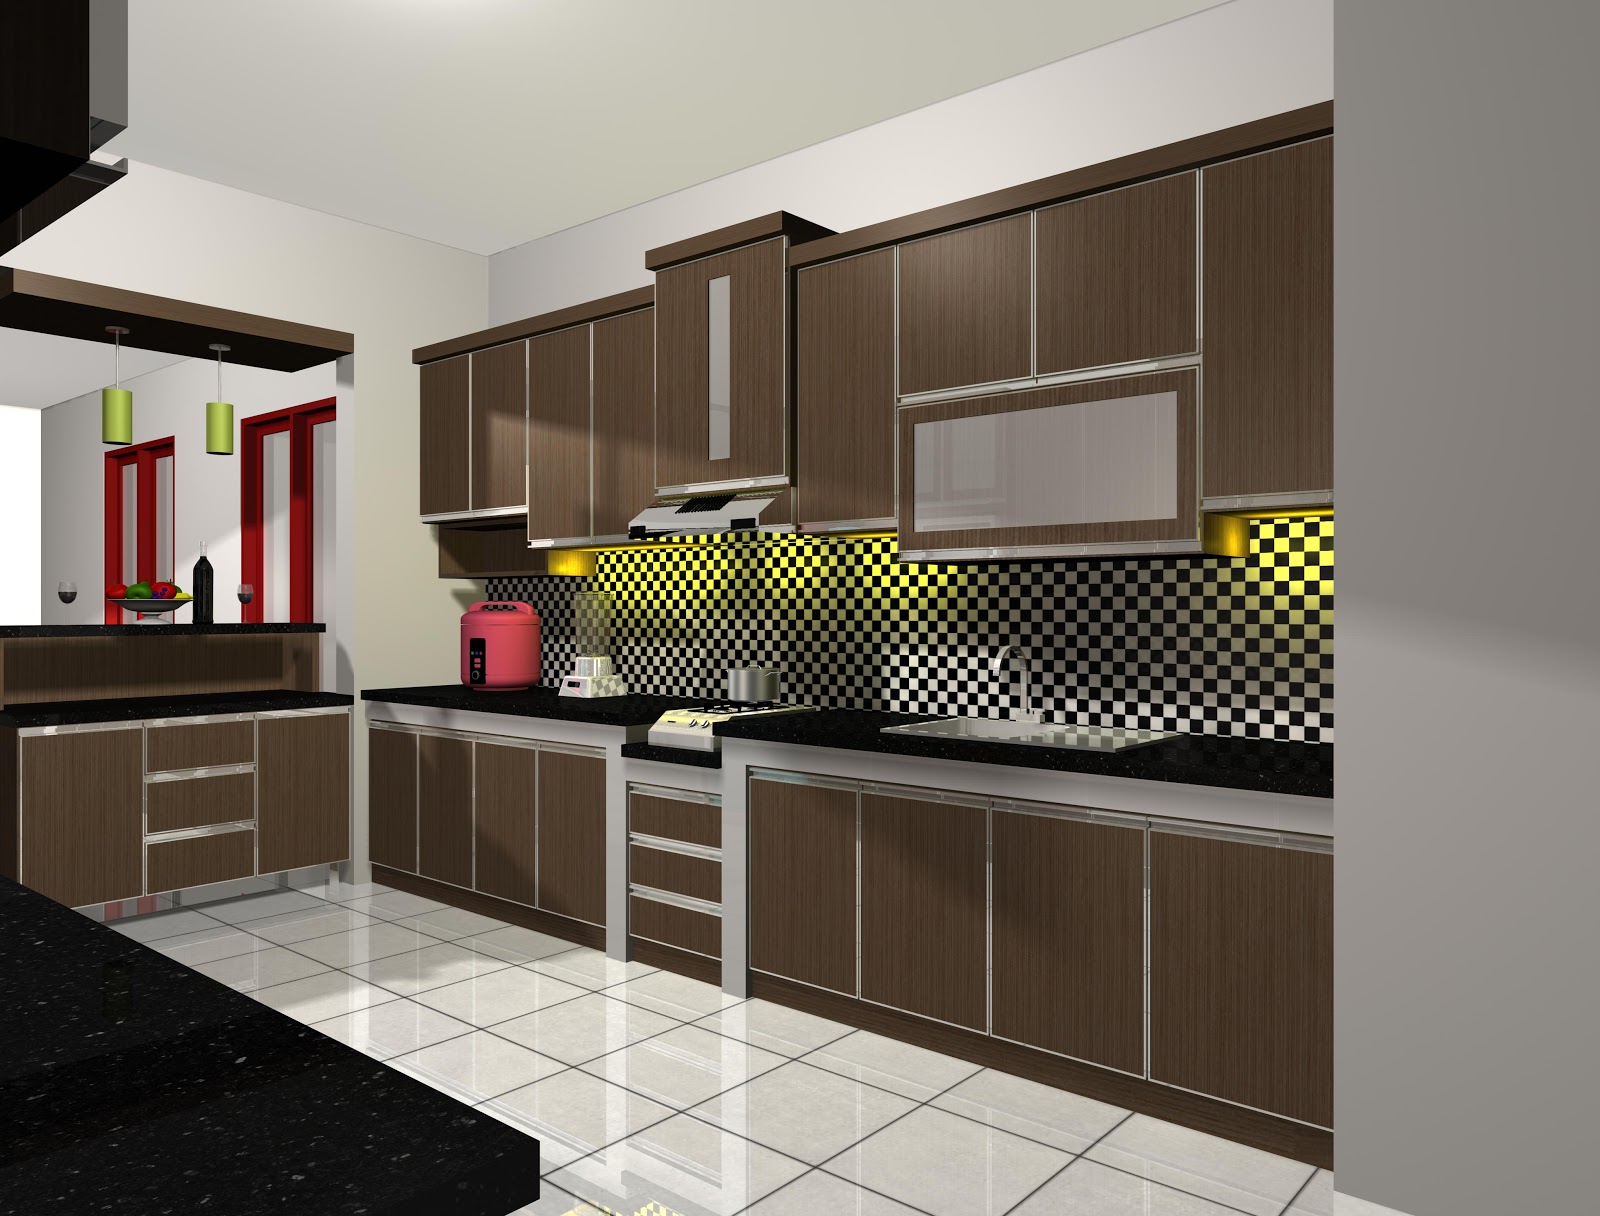 Desain Interior Dapur Rumah Modern  Terbaru 2016